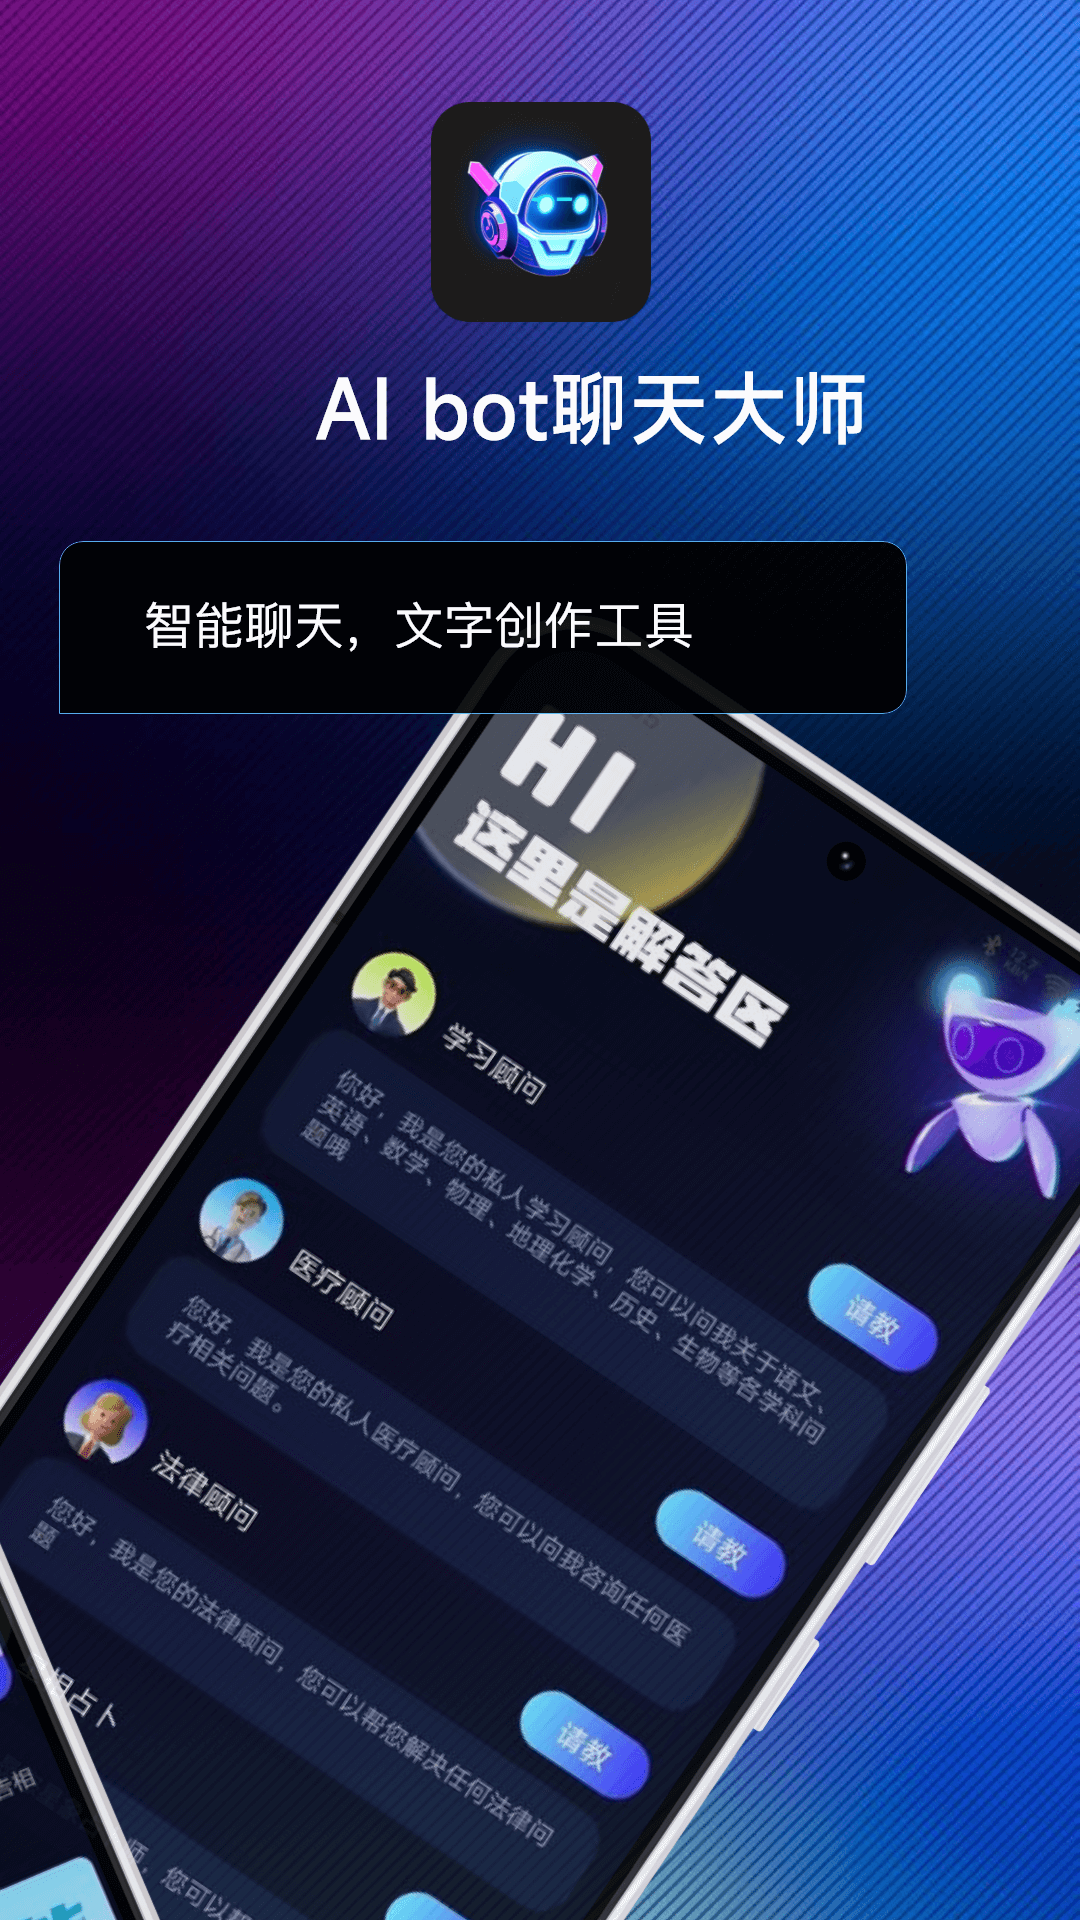 AI bot聊天大师(1)